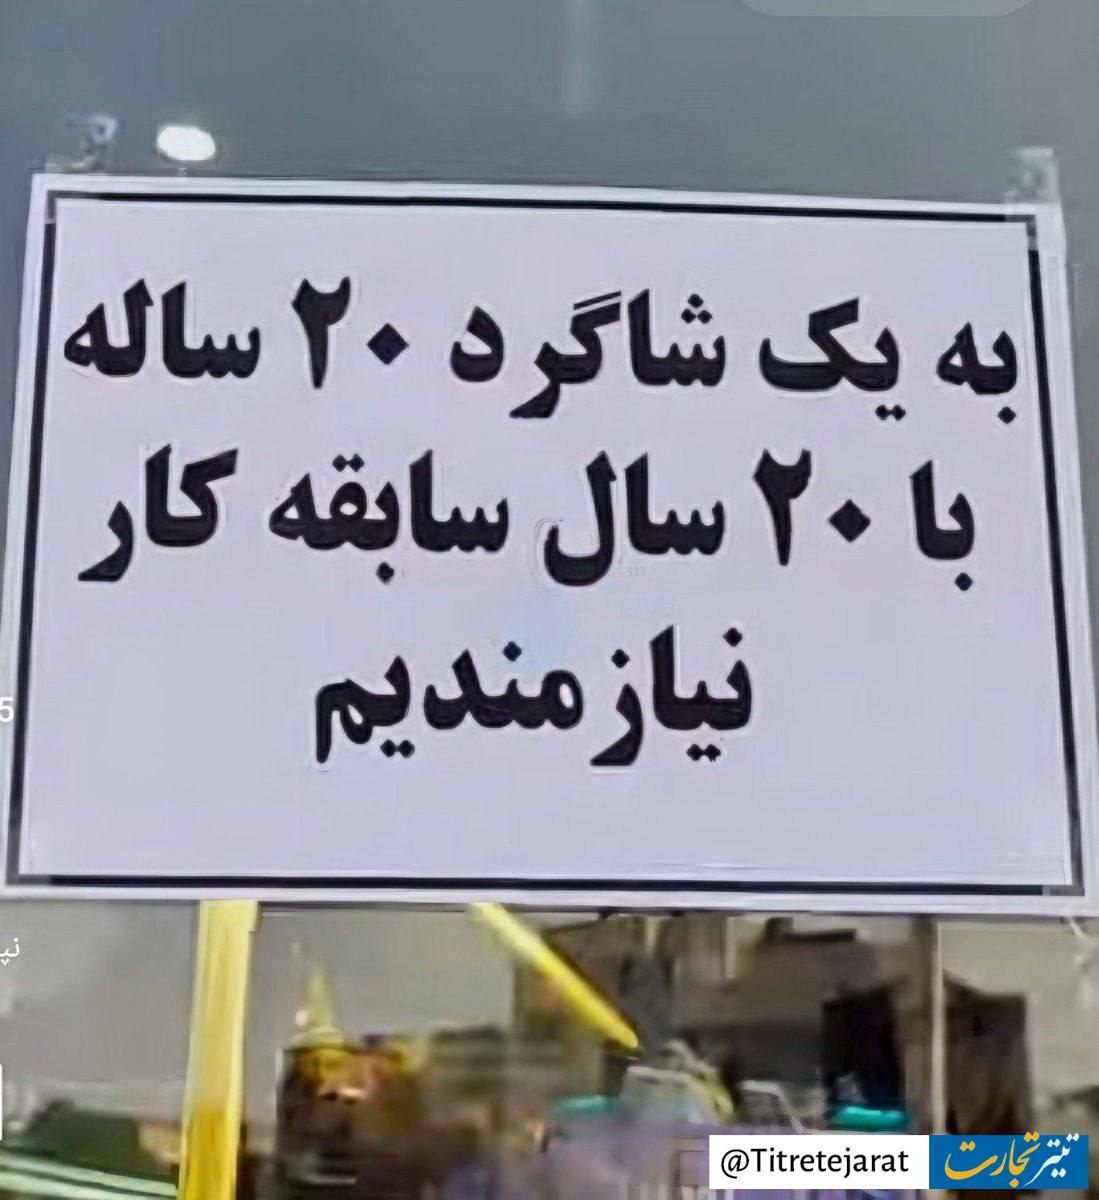 آگهی عجیب برای جذب کارگر در تهران+عکس